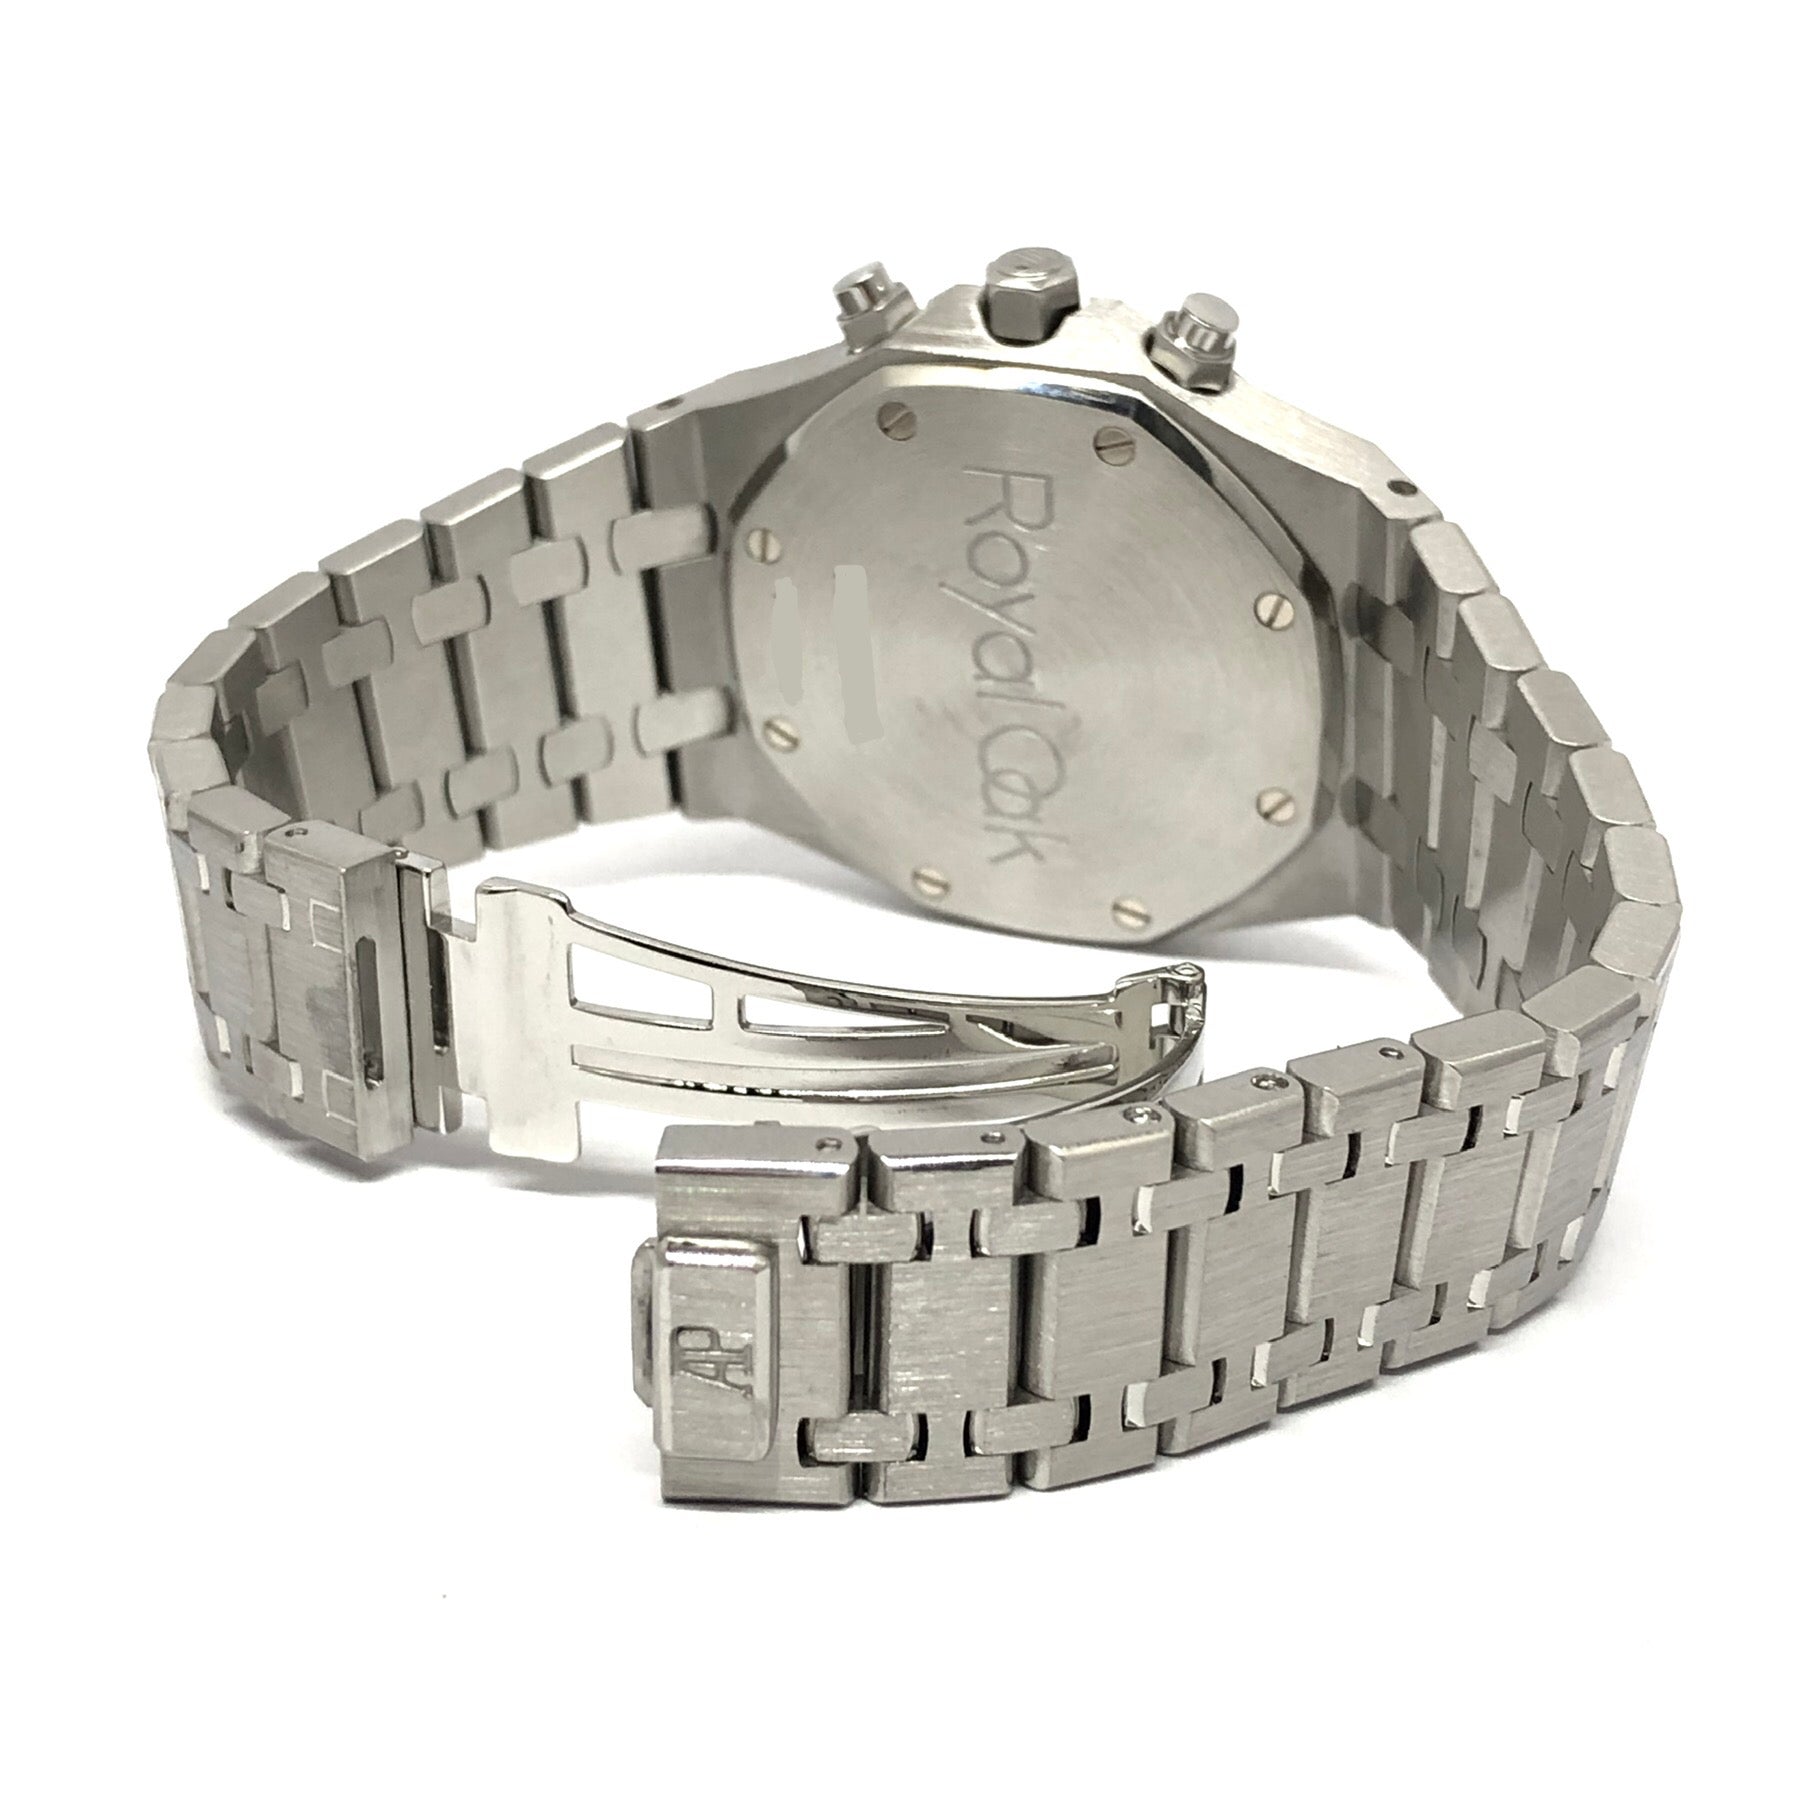 Audemars Piguet Royal Oak Chronograph Stainless Steel Watch